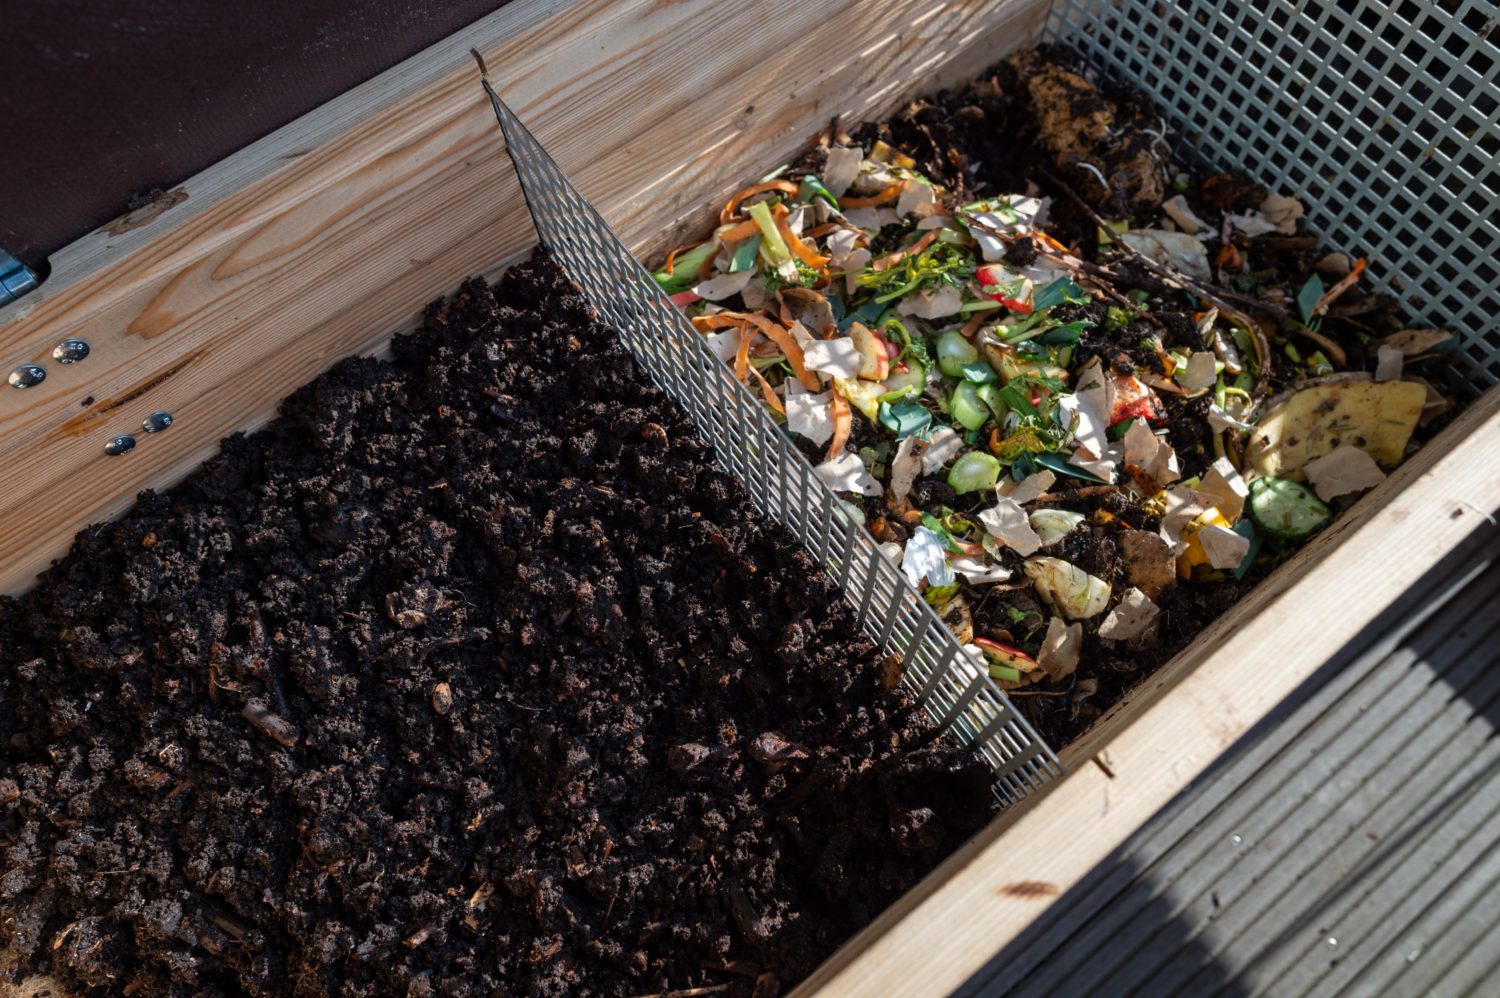 Aus dem Bio-Abfall kann noch Leben entstehen. Im ziemlich außergewöhnlichen Kurs für Wurmkompostierung lernt man, worauf dabei zu achten ist. Foto: hubus | Carsten & Seidel GbR